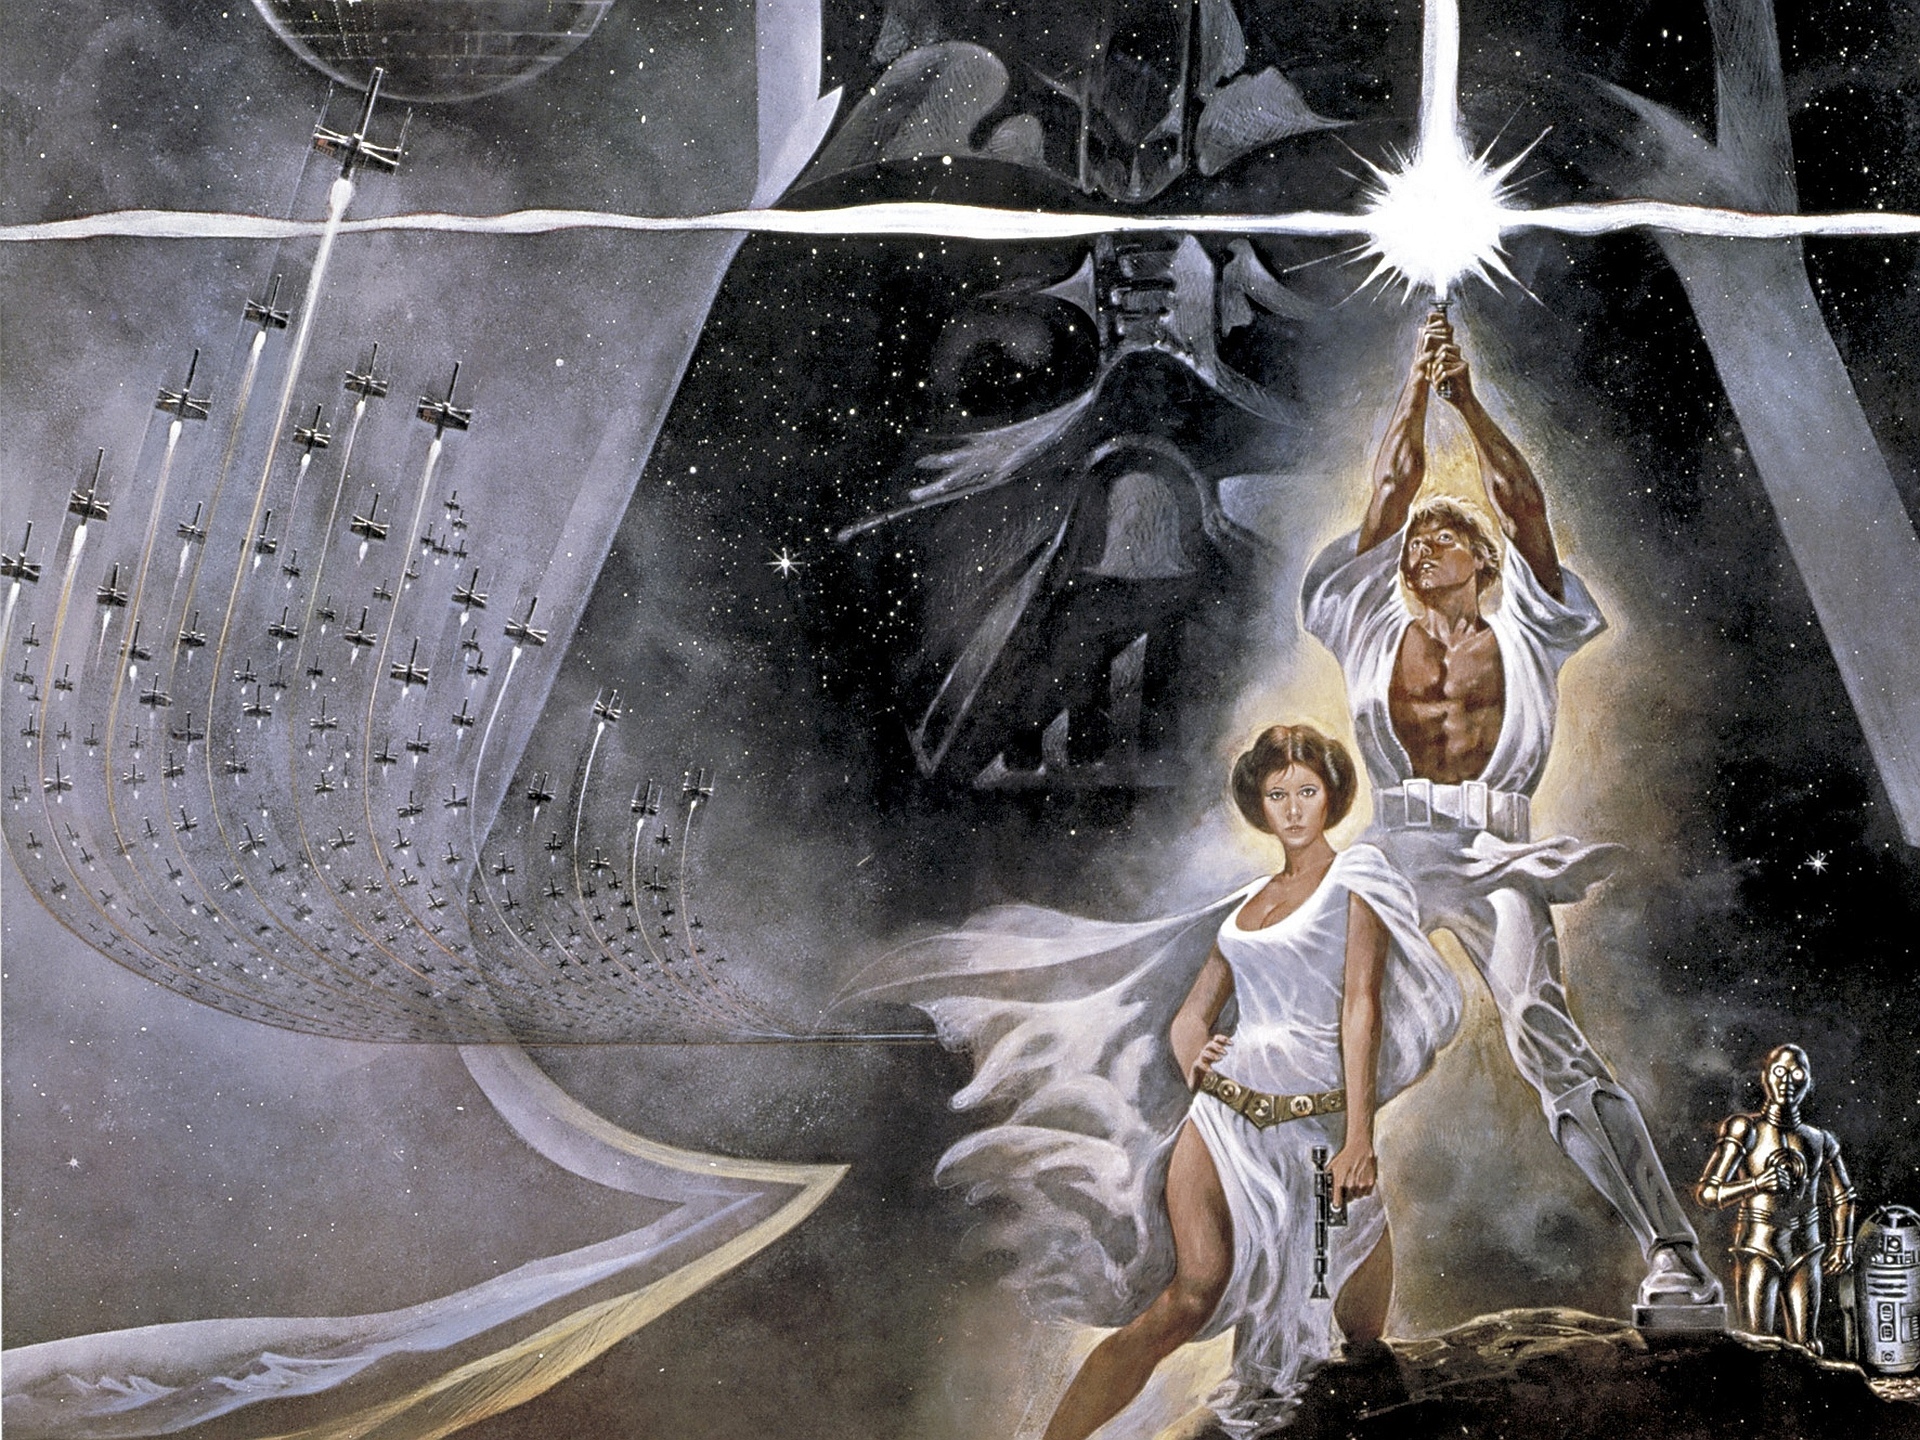 4k Restoration Of Original Star Wars Could Return To